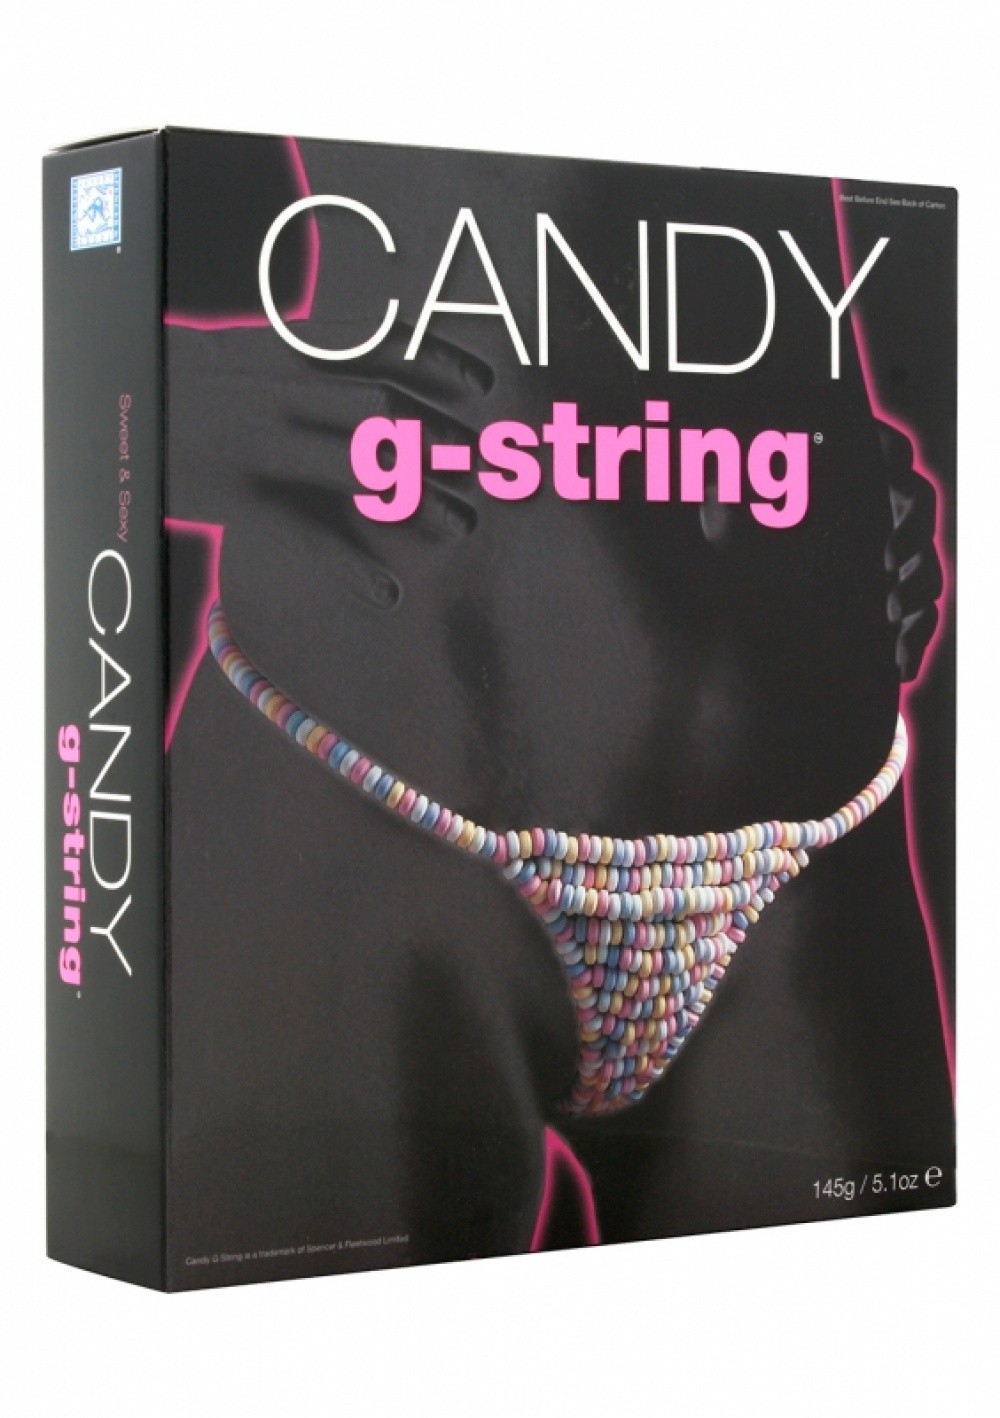 String bonbon pour femme